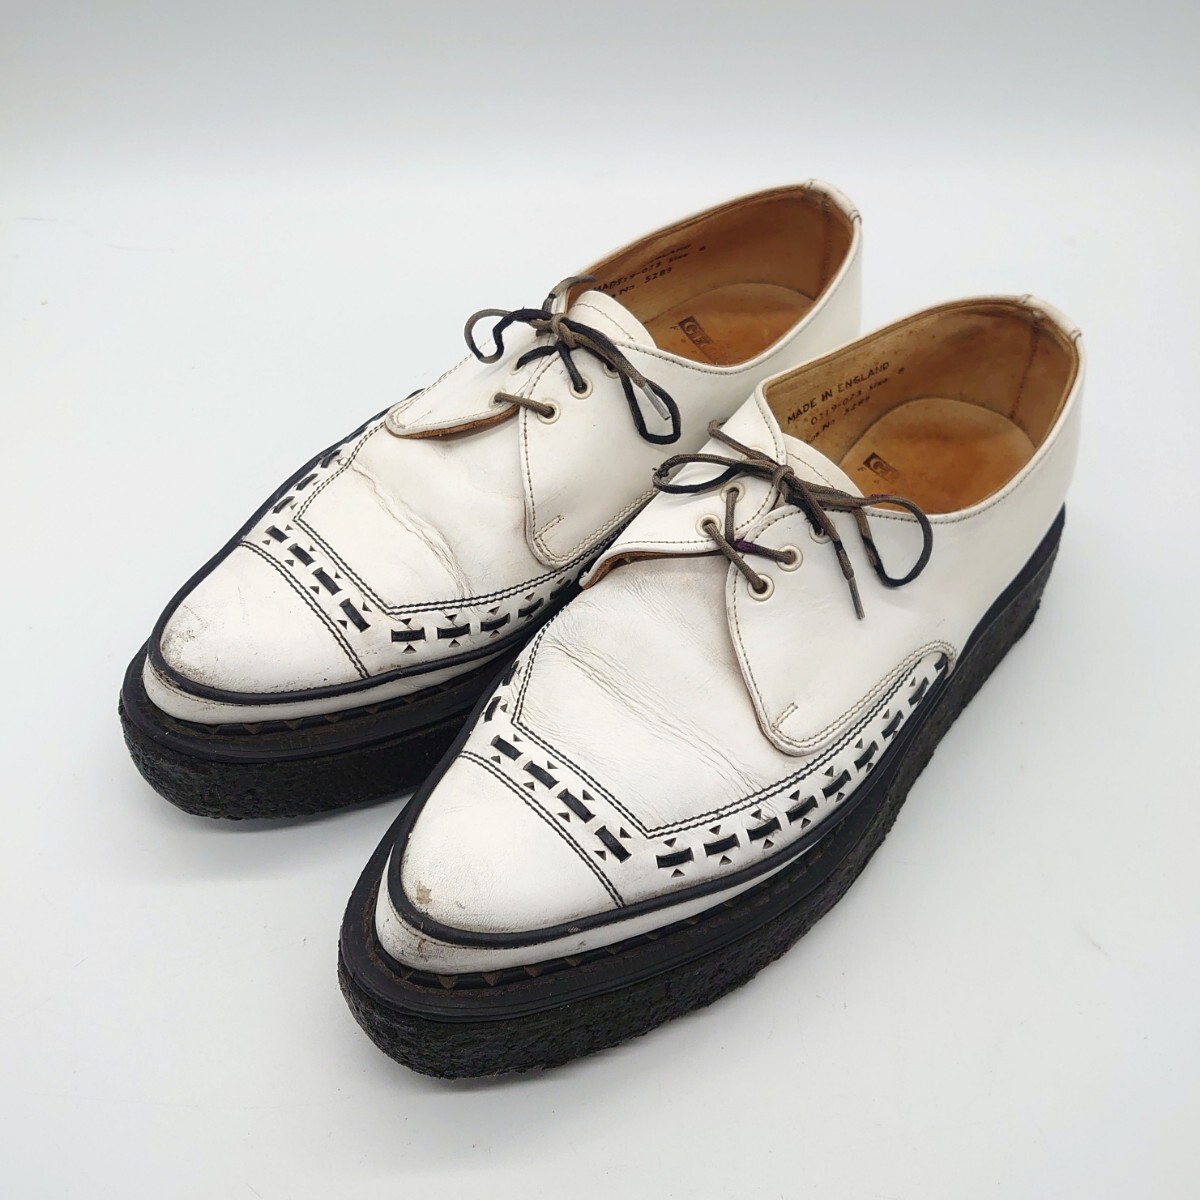 GEORGE COX ジョージコックス 5289 GIBSON ギブソン ラバーソール シューズ 靴 イングランド 英国製 ブラック ホワイト ブランド tp-24x290_画像1